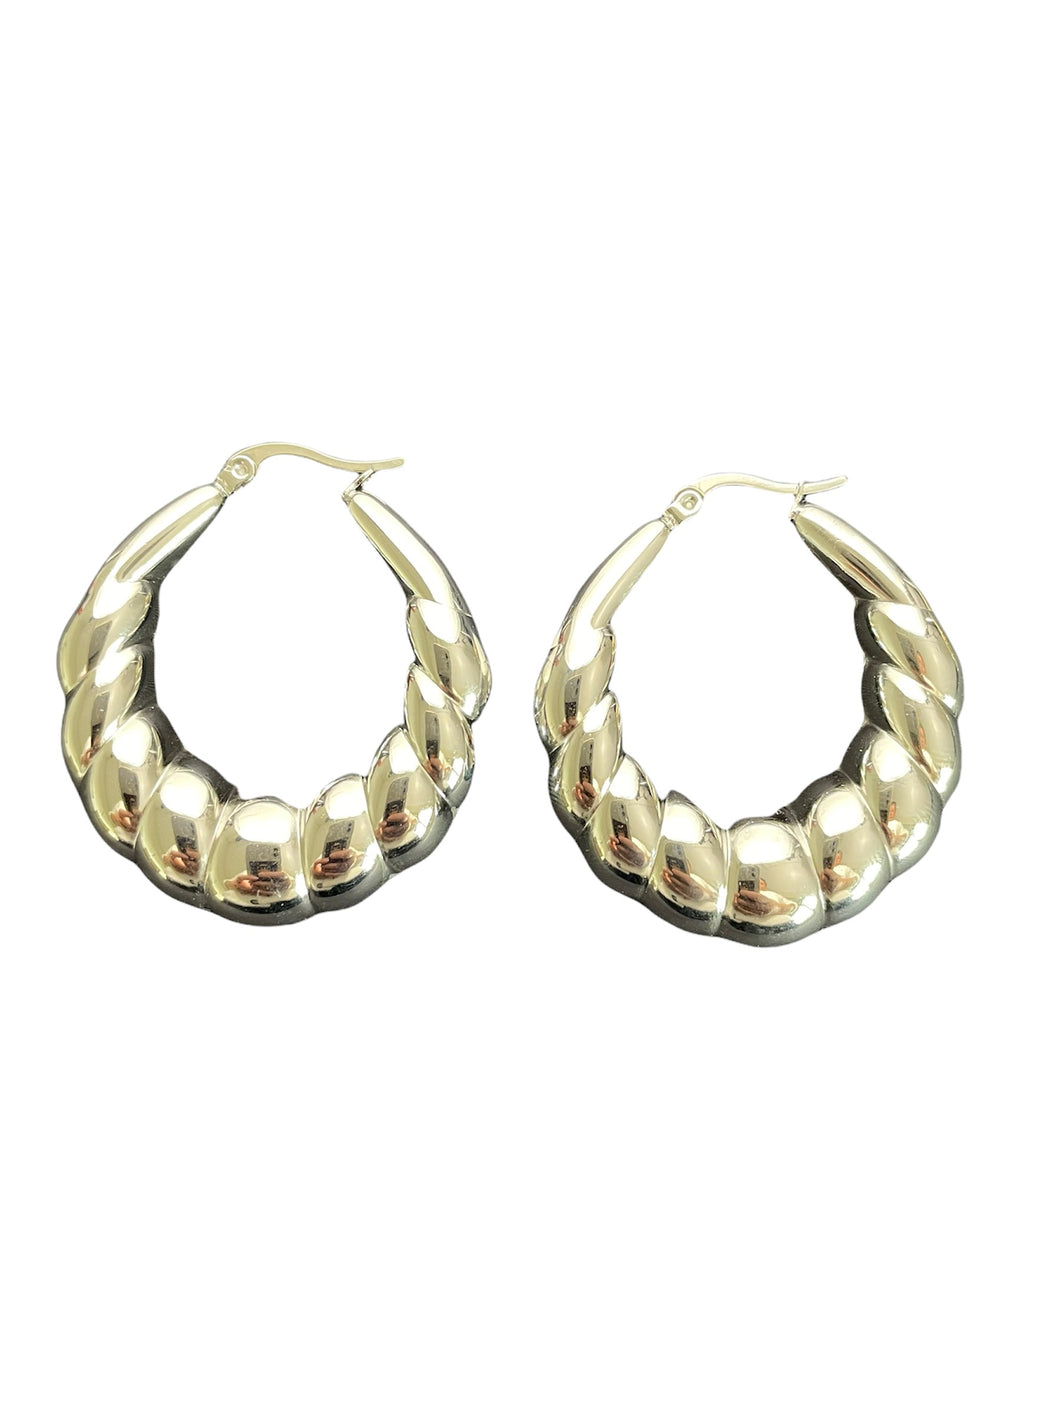 Zilveren oorbellen Pam zijn mooi vormgegeven statement oorbellen. Oorbellen Pam zijn verkrijgbaar in goud- en zilverkleurig stainless steel en hebben een diameter van ca. 4cm.